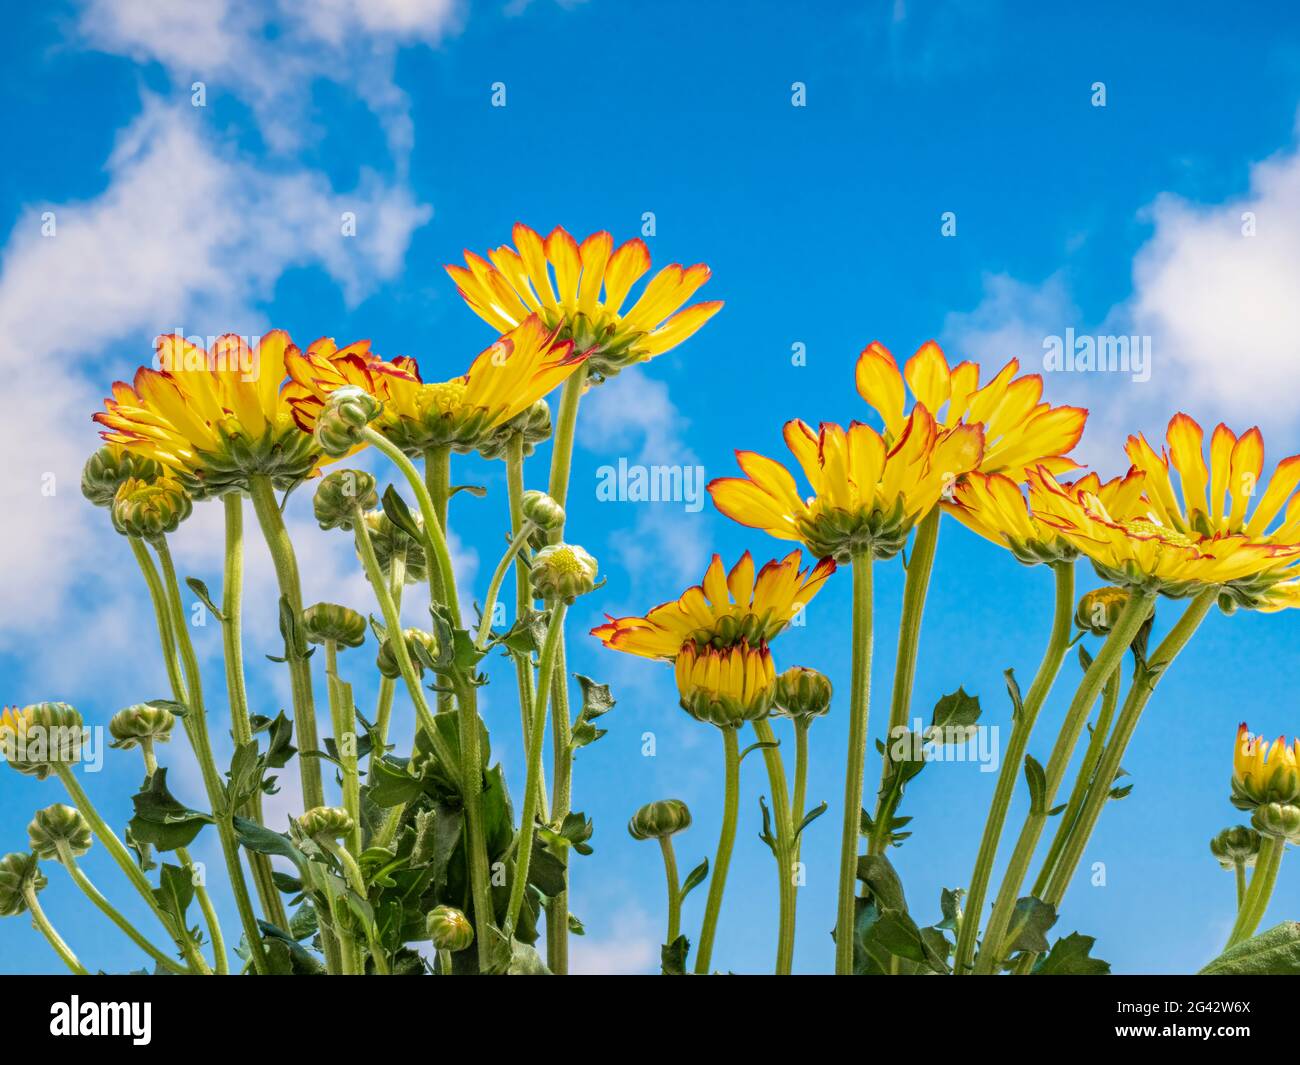 Primer plano de los crisantemos contra el cielo azul con nubes blancas esponjosas Foto de stock